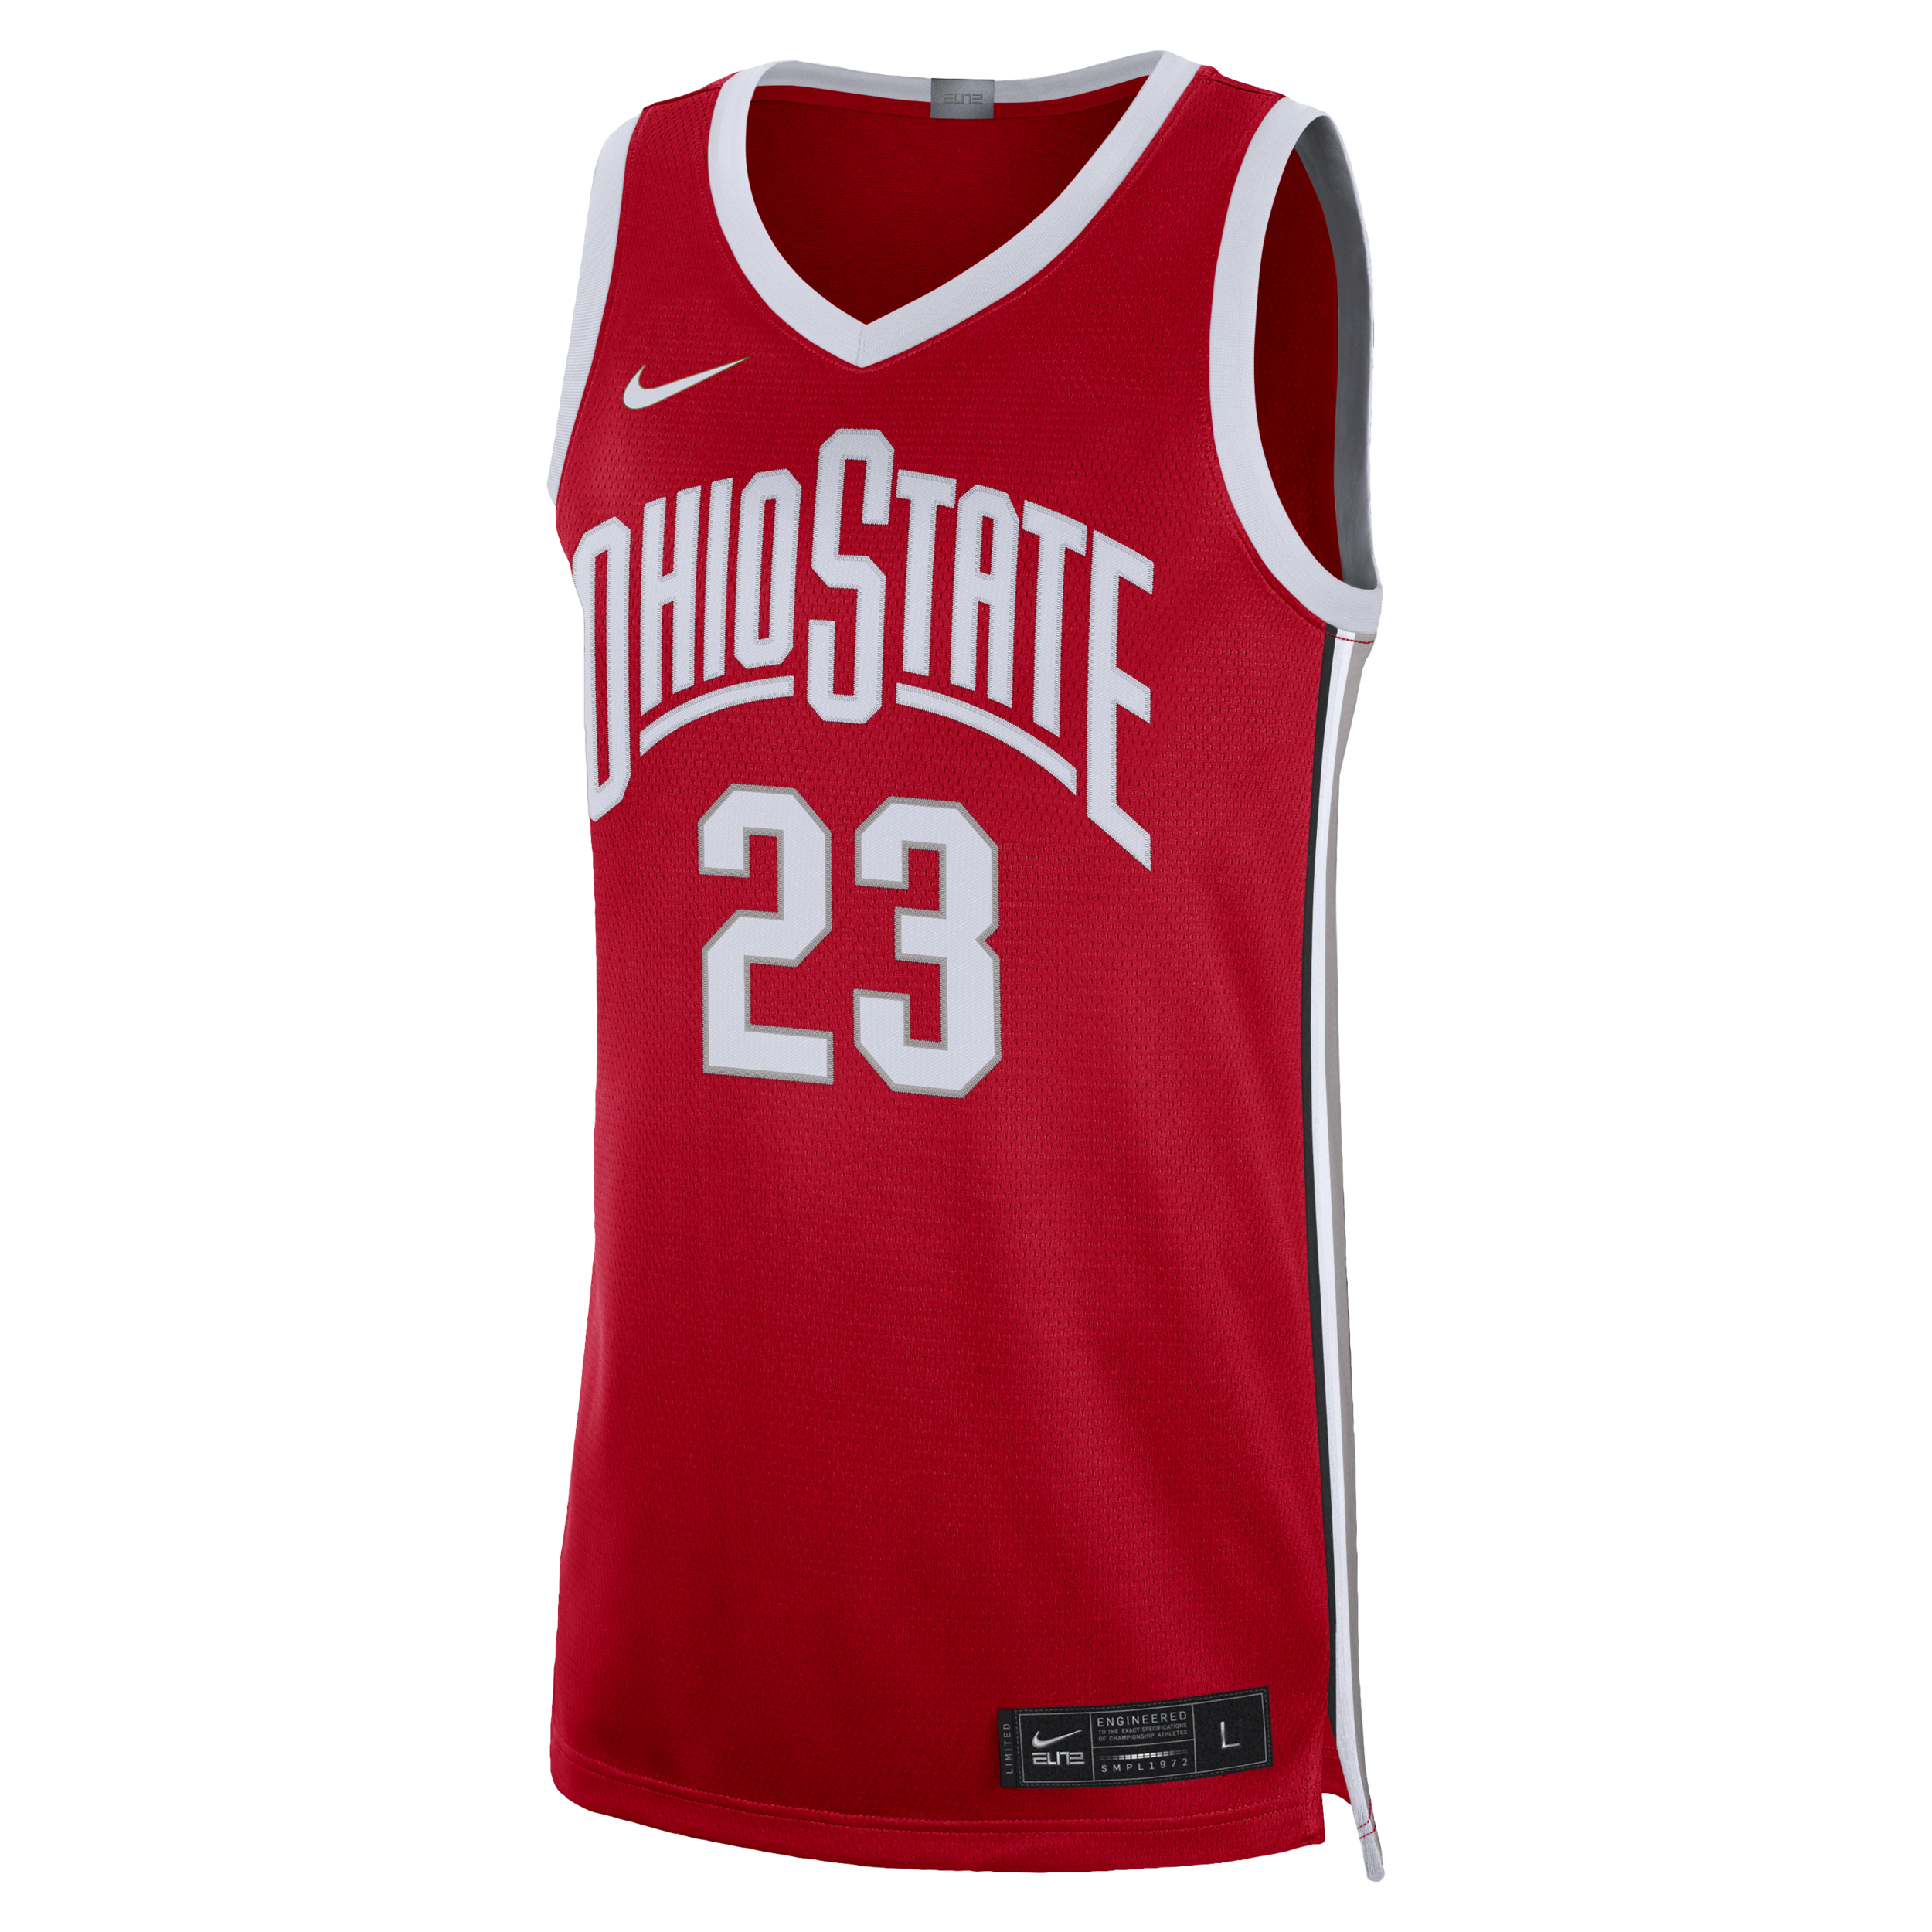 Maglia da basket Nike Dri-FIT College Ohio State Limited – Uomo - Rosso